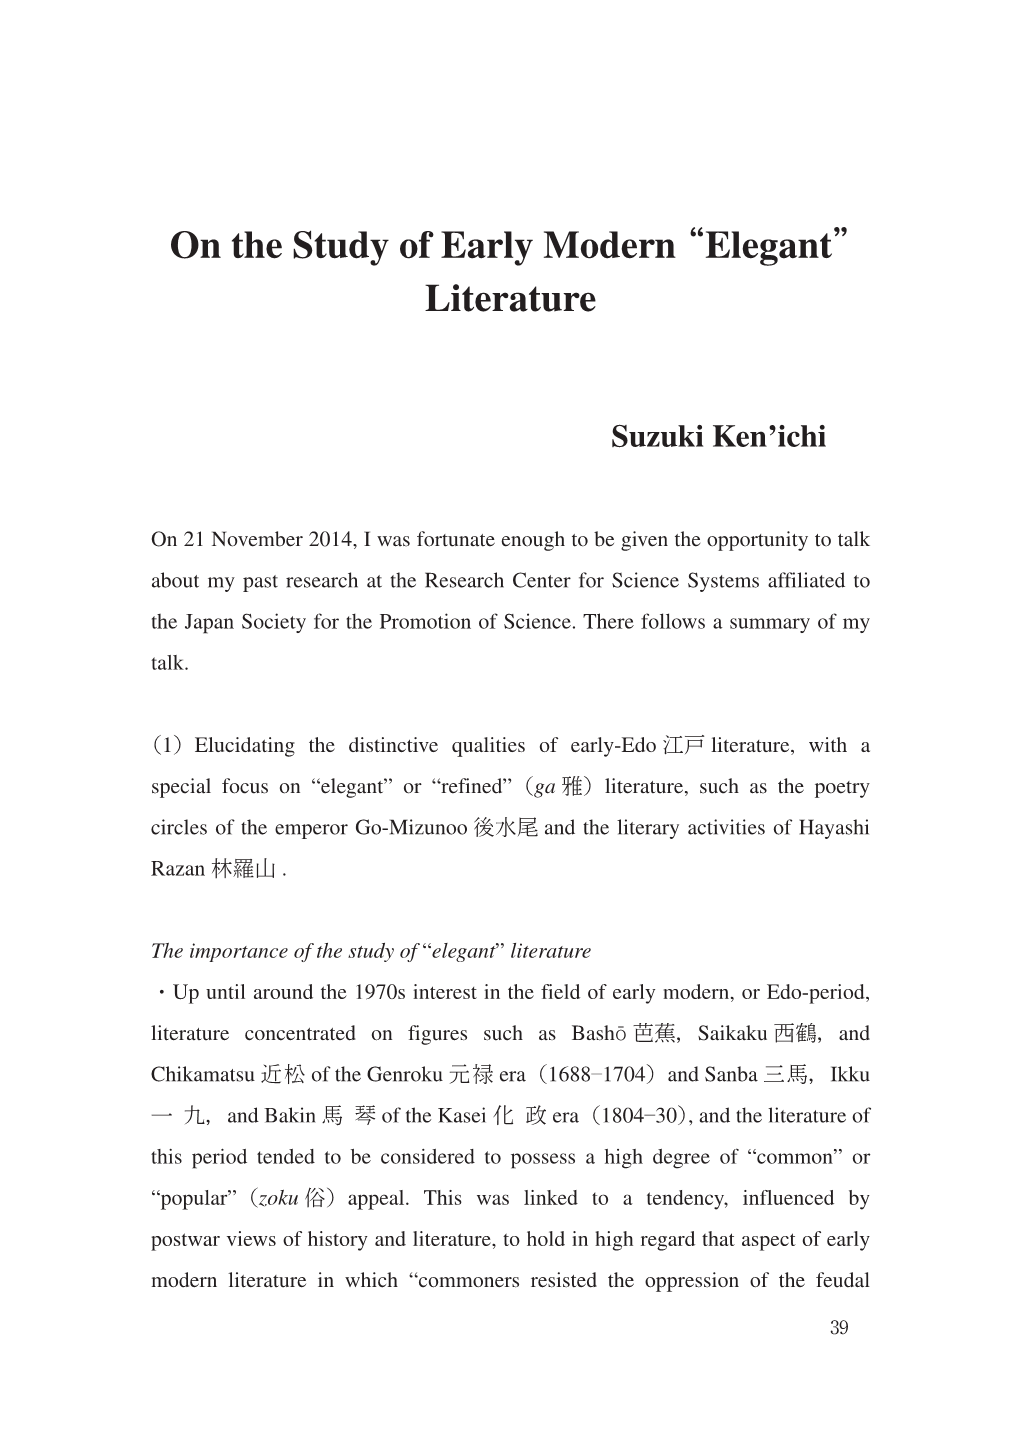 On the Study of Early Modern “Elegant” Literature（Suzuki Ken’Ichi）